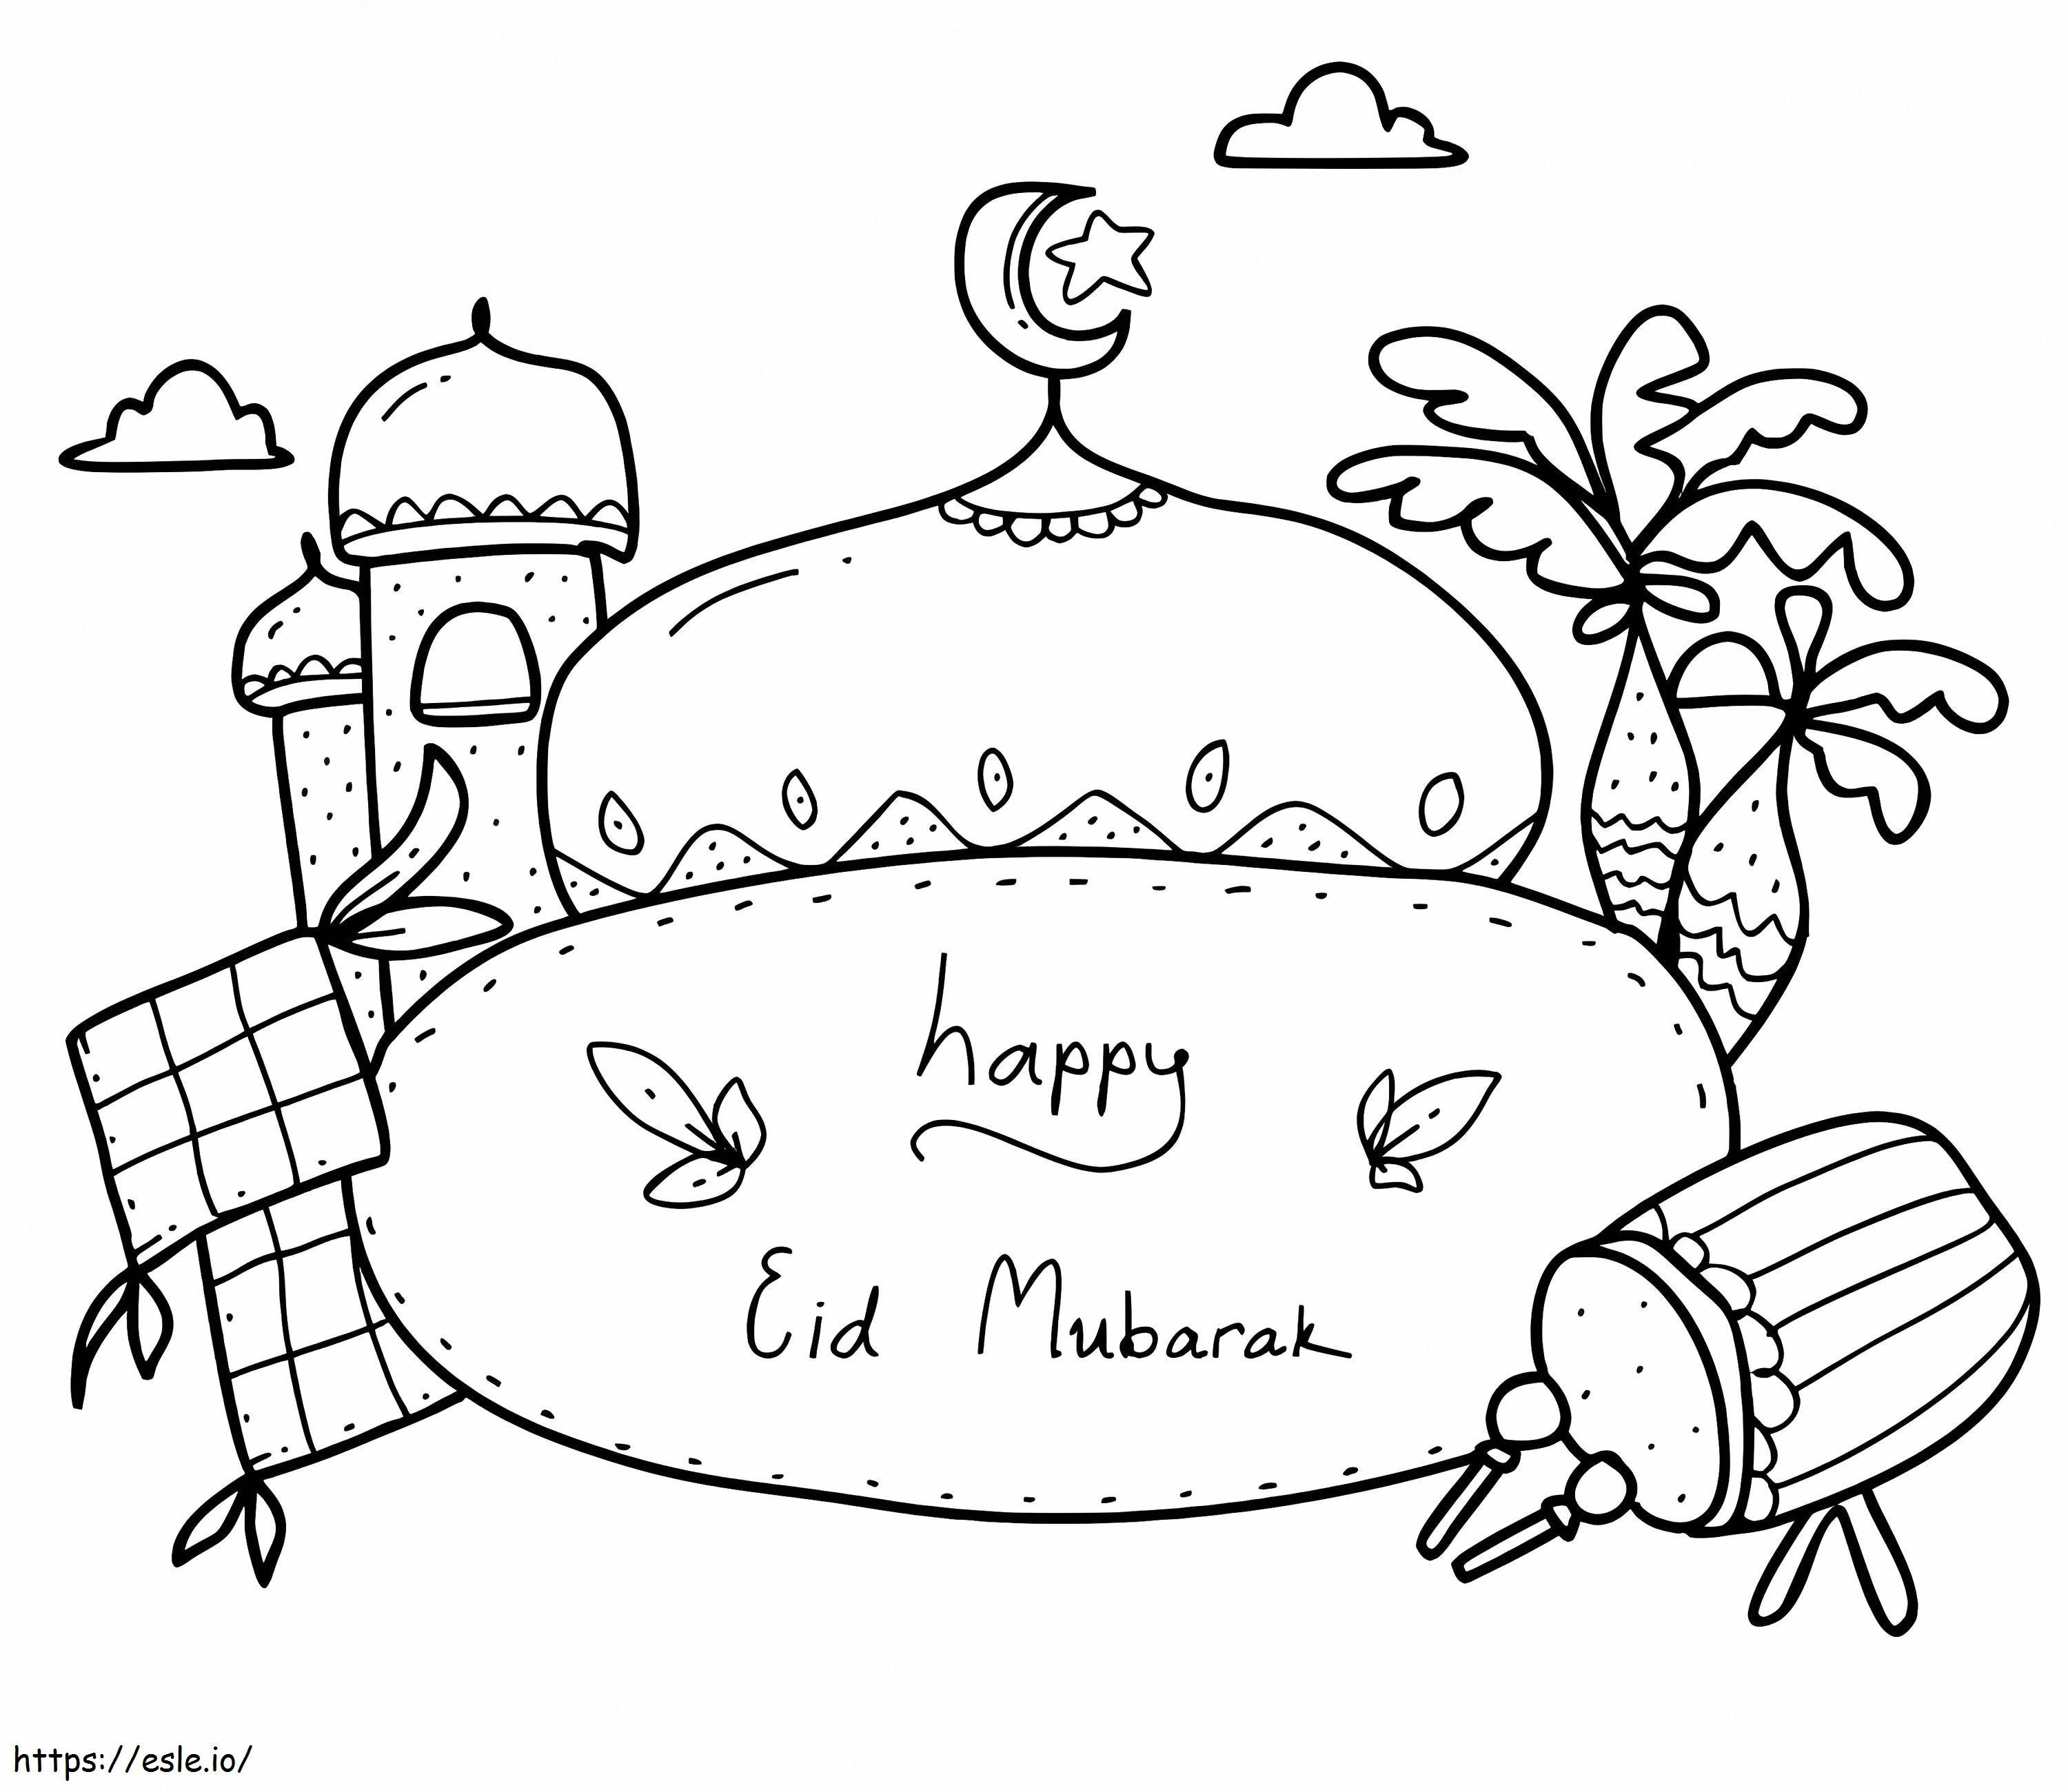 Happy Eid Al-Adha coloring page